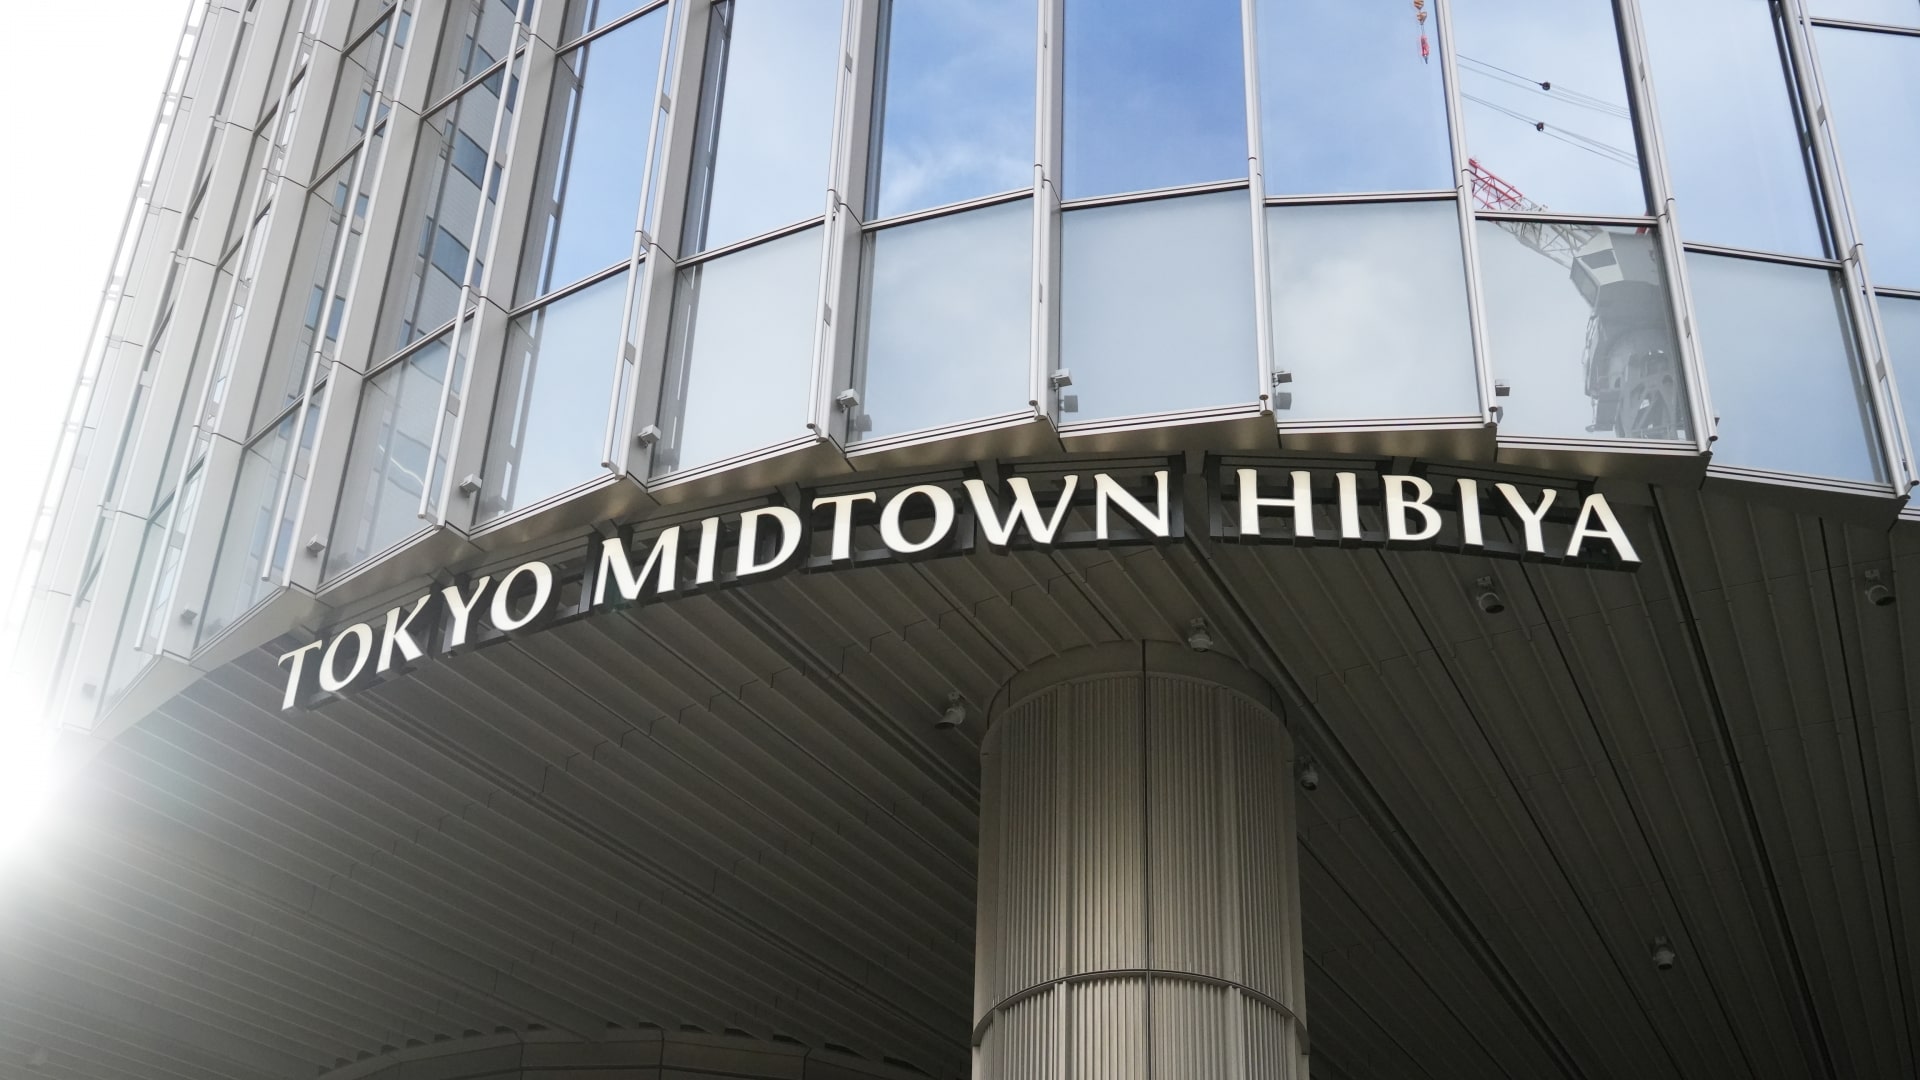 Midtown Hibiya